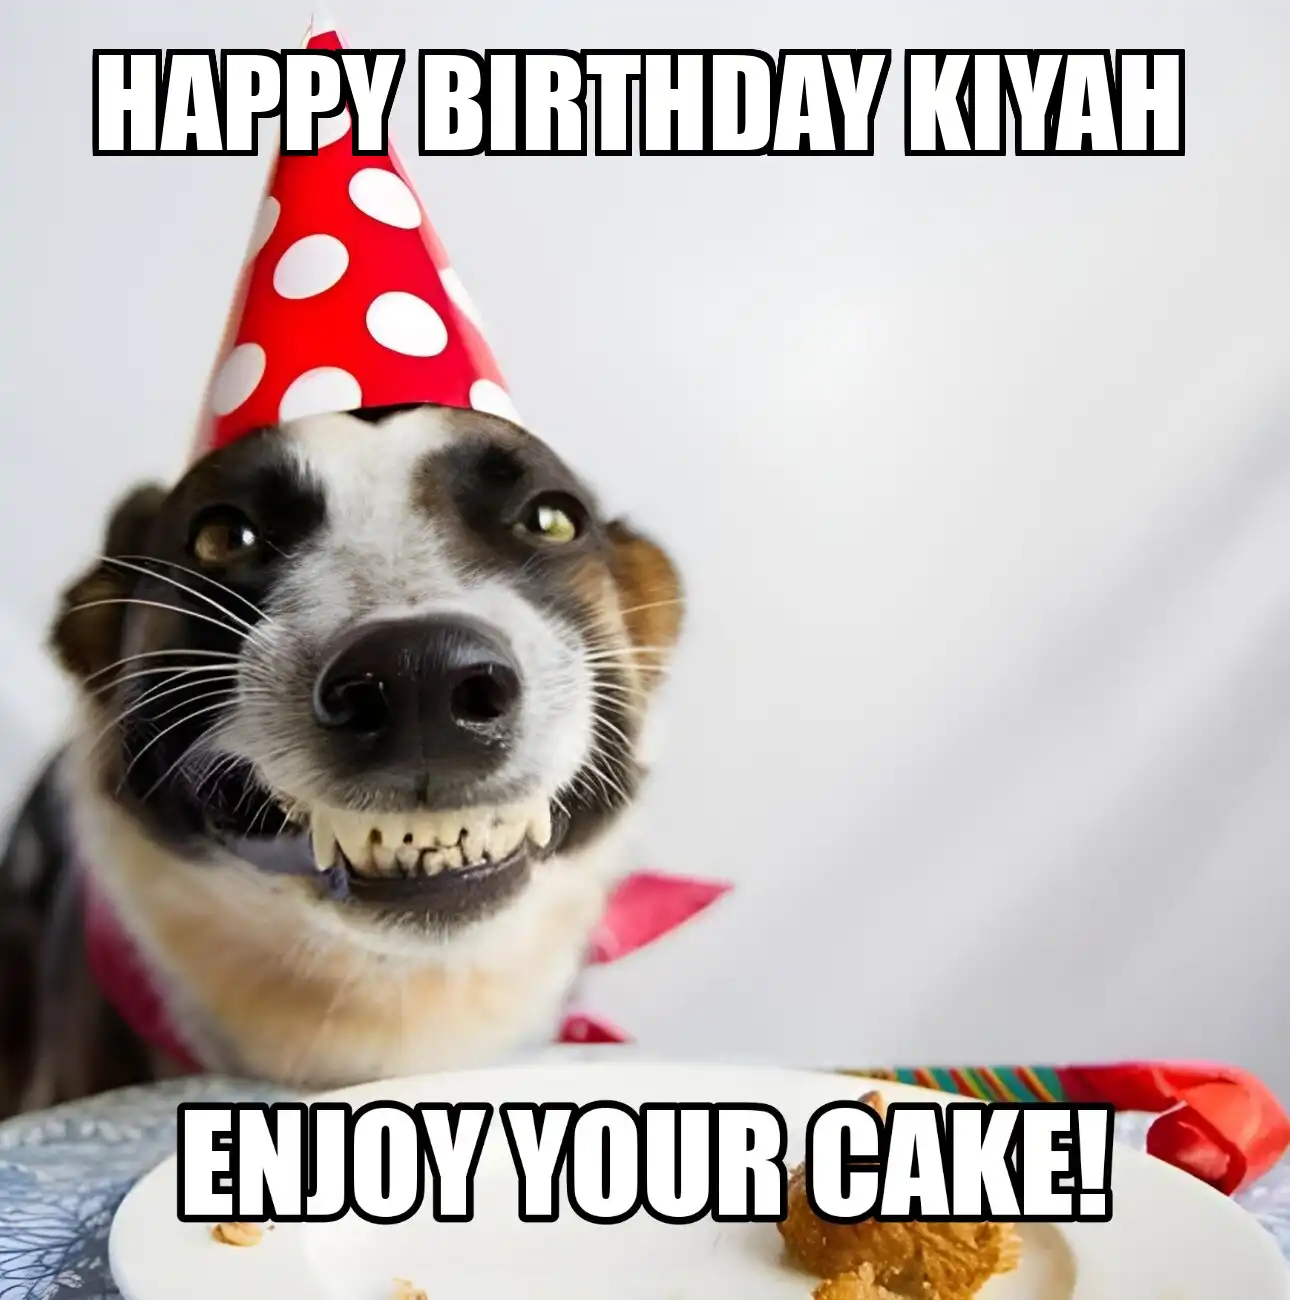 Happy Birthday Kiyah Enjoy Your Cake Dog Meme